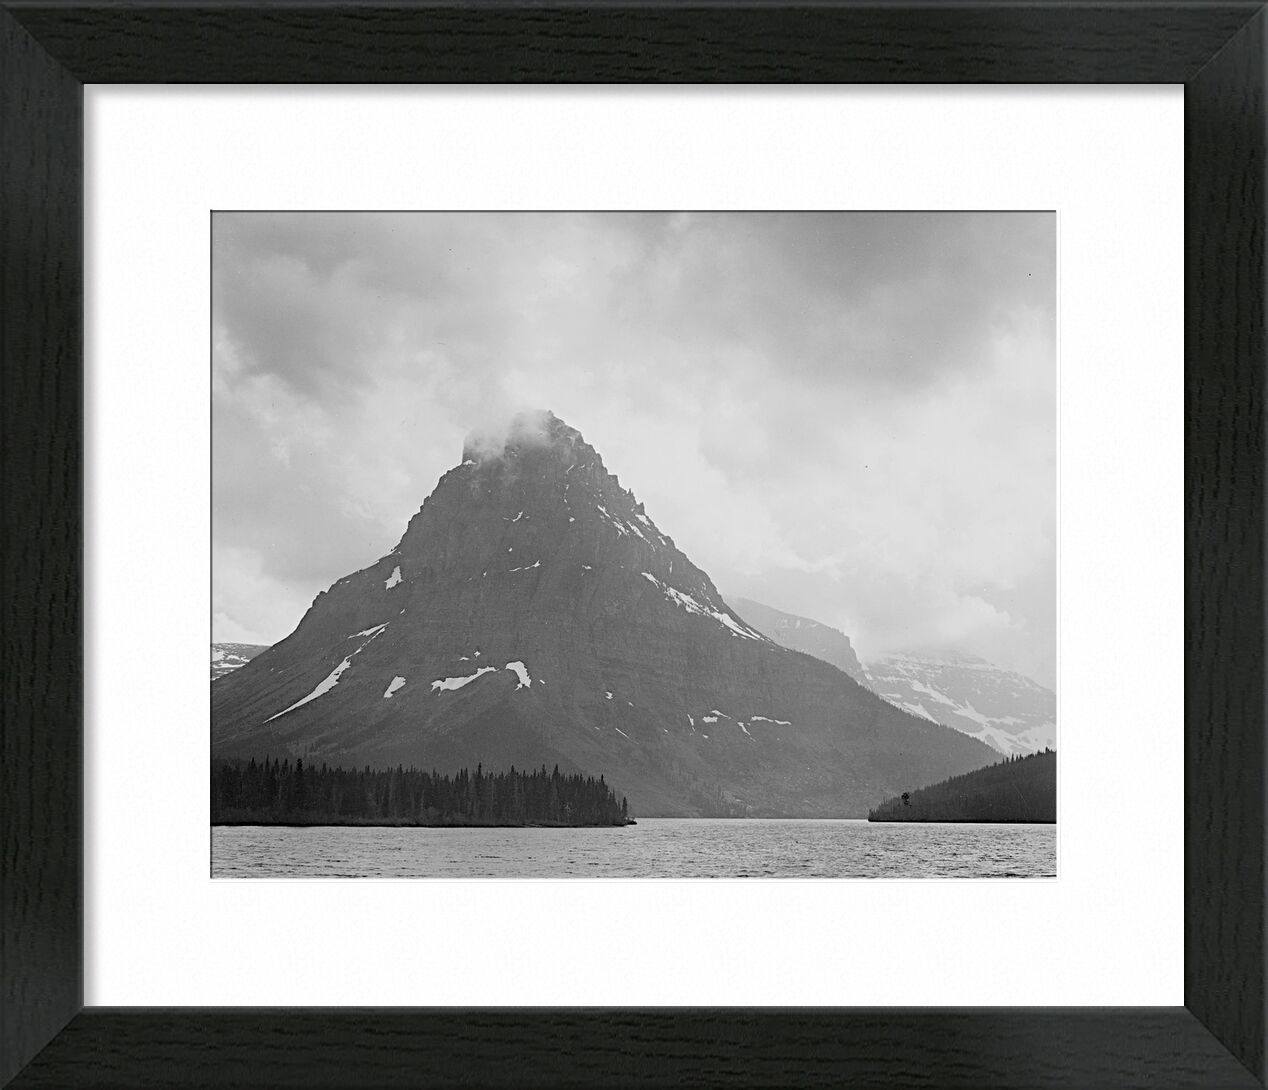 High Lone Mountain Peak Lake In Foreground - Ansel Adams desde Bellas artes, Prodi Art, ANSEL ADAMS, montañas, invierno, nieve, blanco y negro